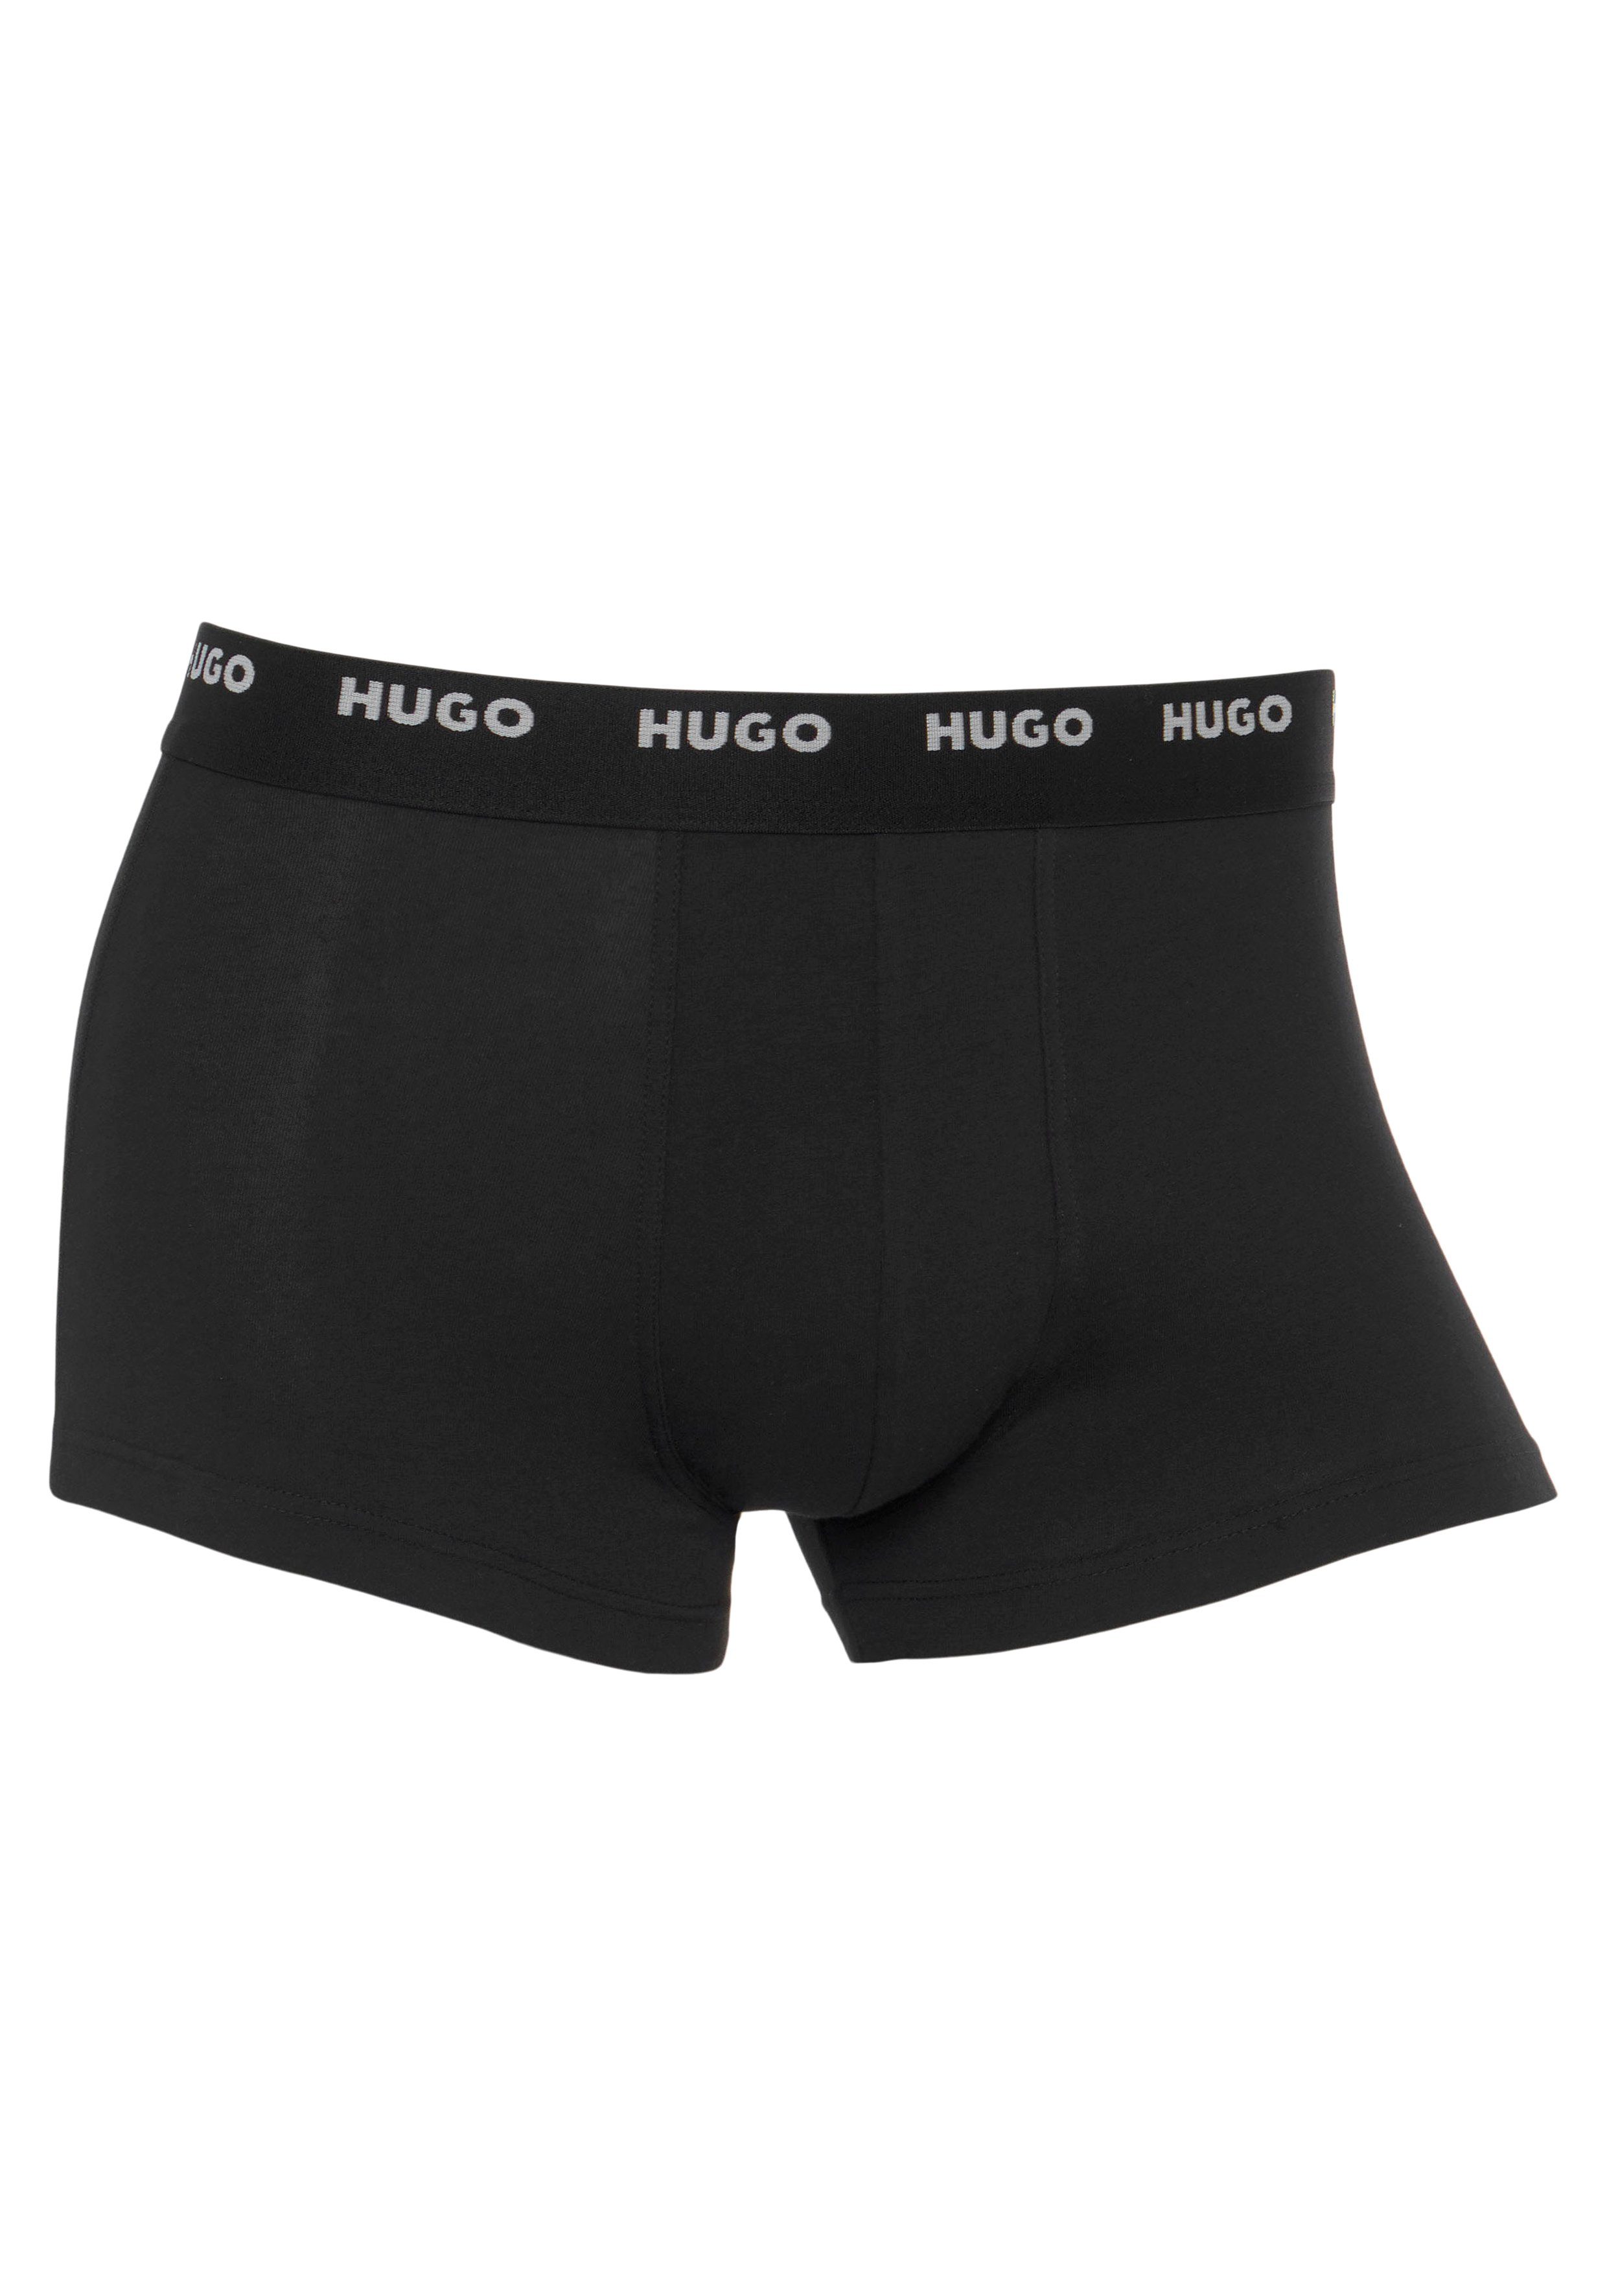 5er HUGO PACK FIVE Trunk mit 5-St., TRUNK Black001 Logo-Elastikbund (Packung, HUGO Pack)